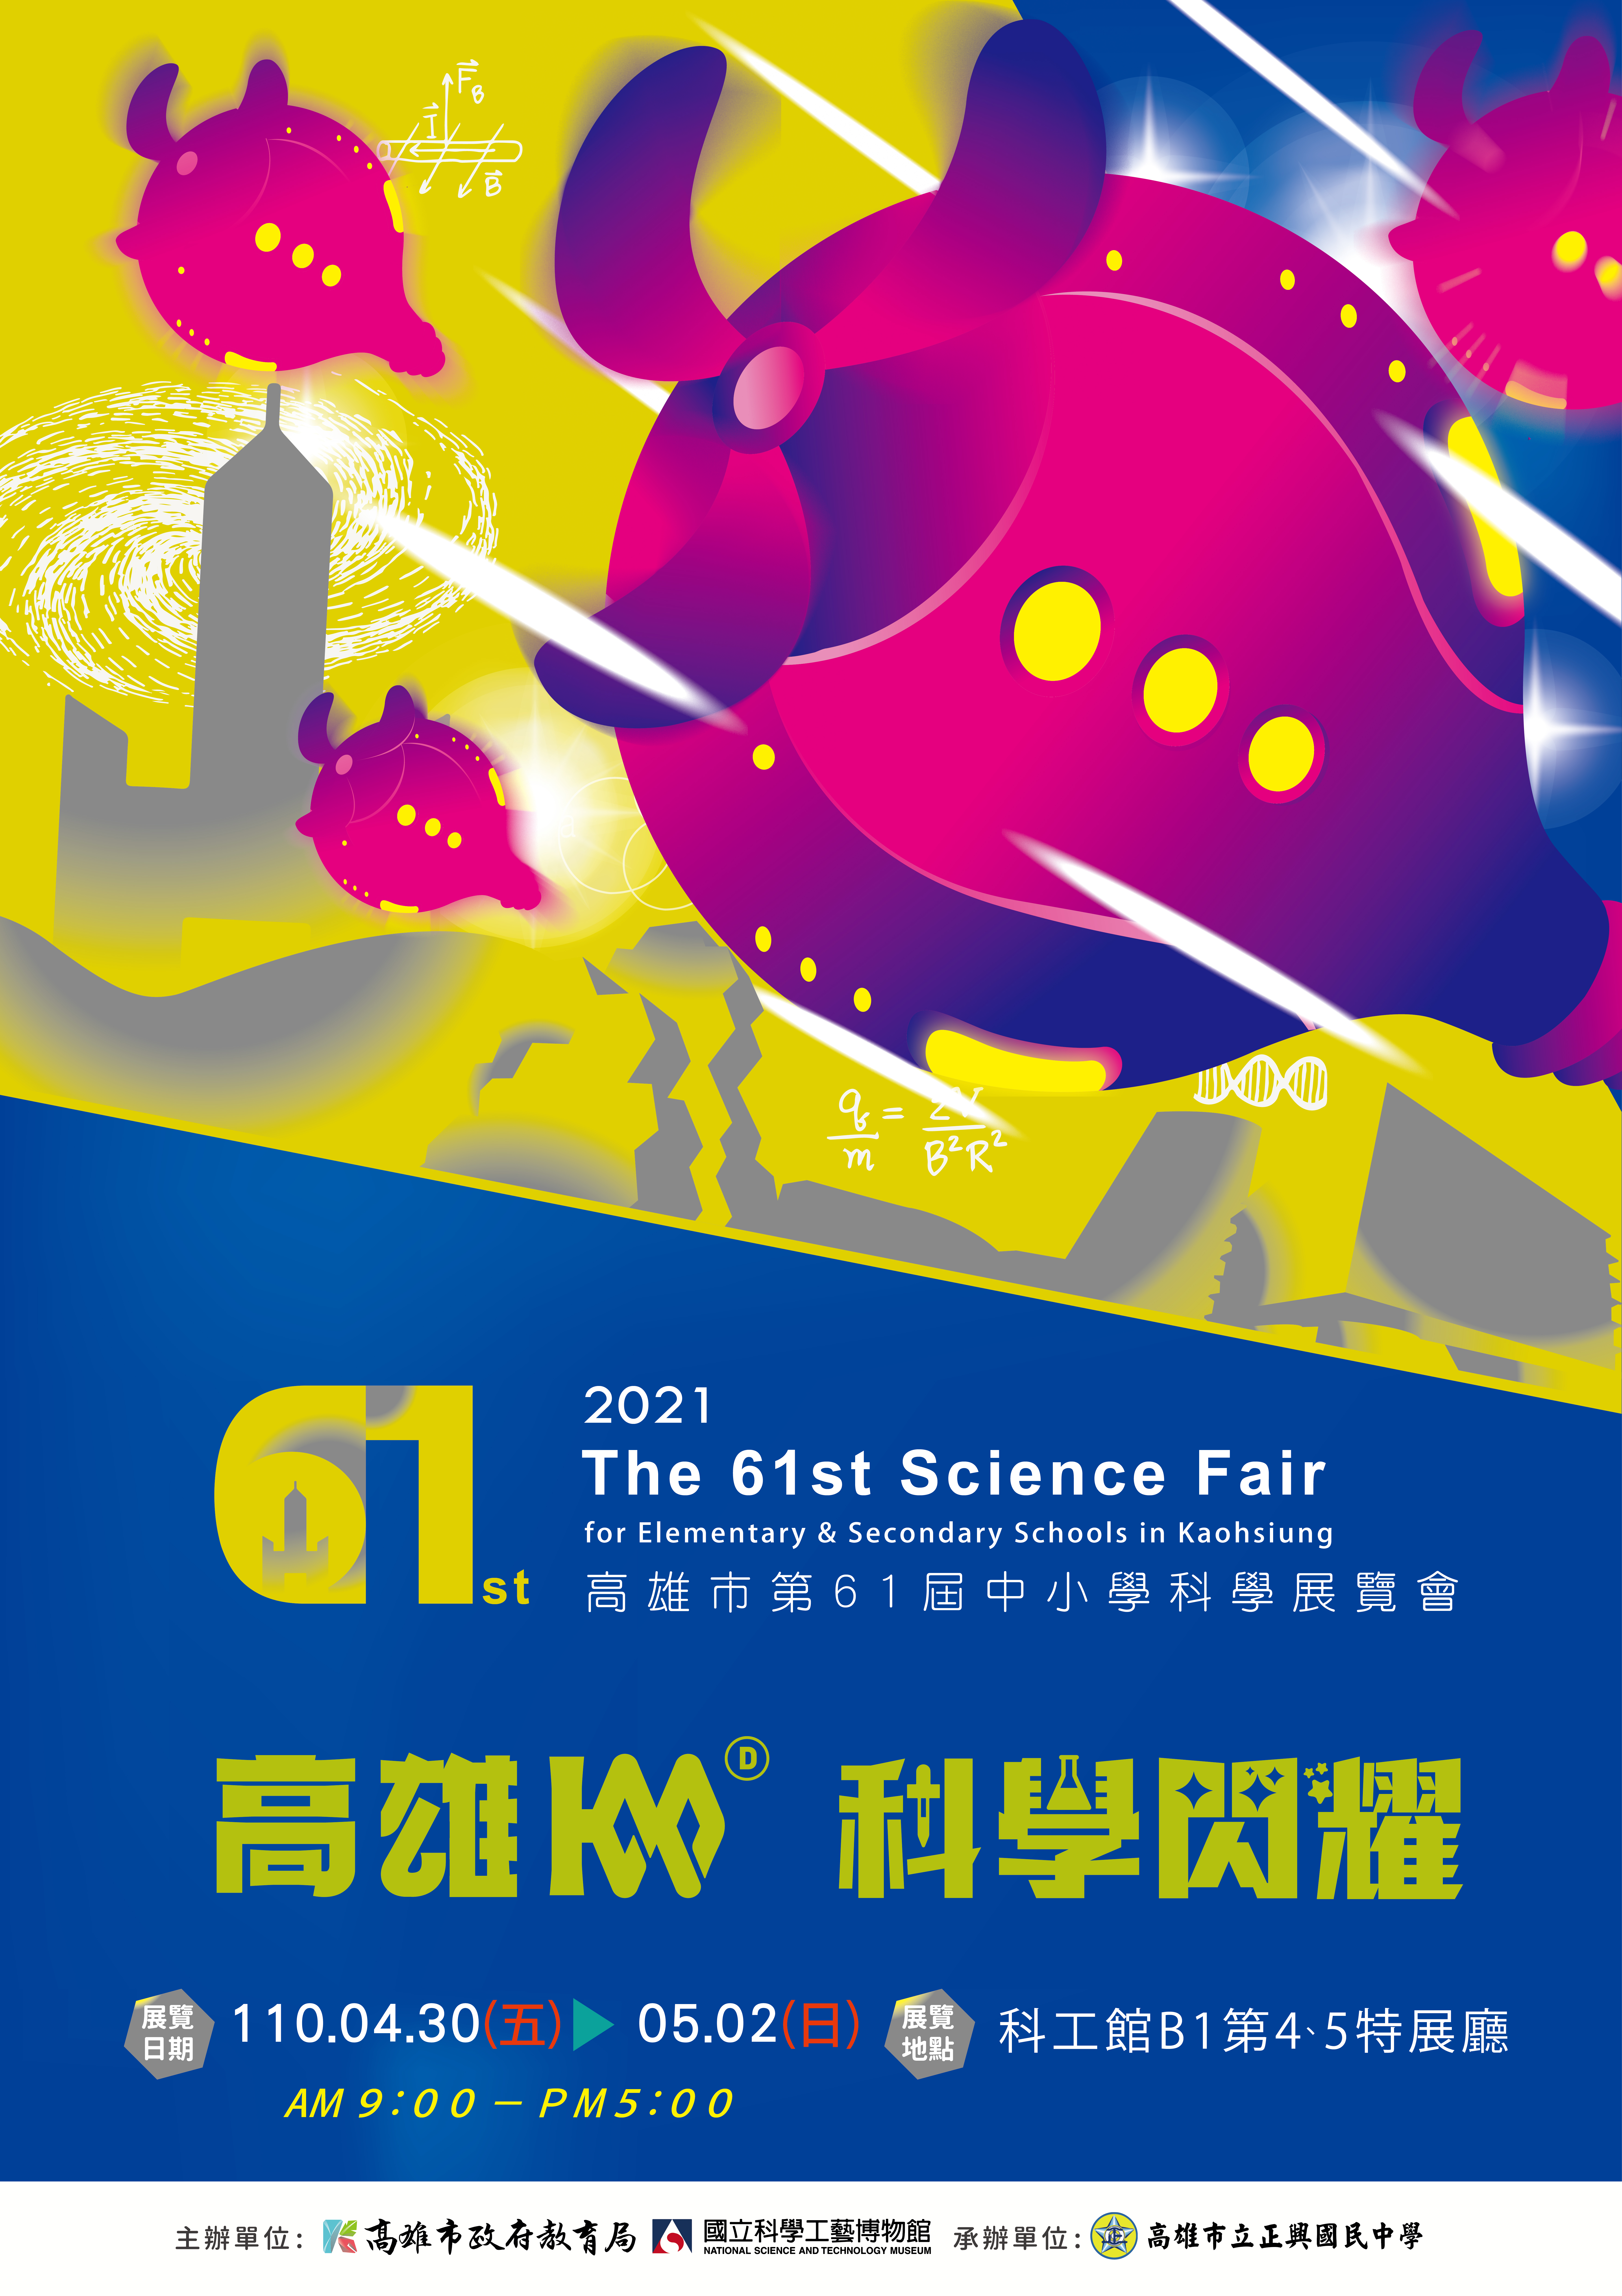 高雄100、科學閃耀第61屆中小學科學展覽會 4月30日至5月2日在本館展出